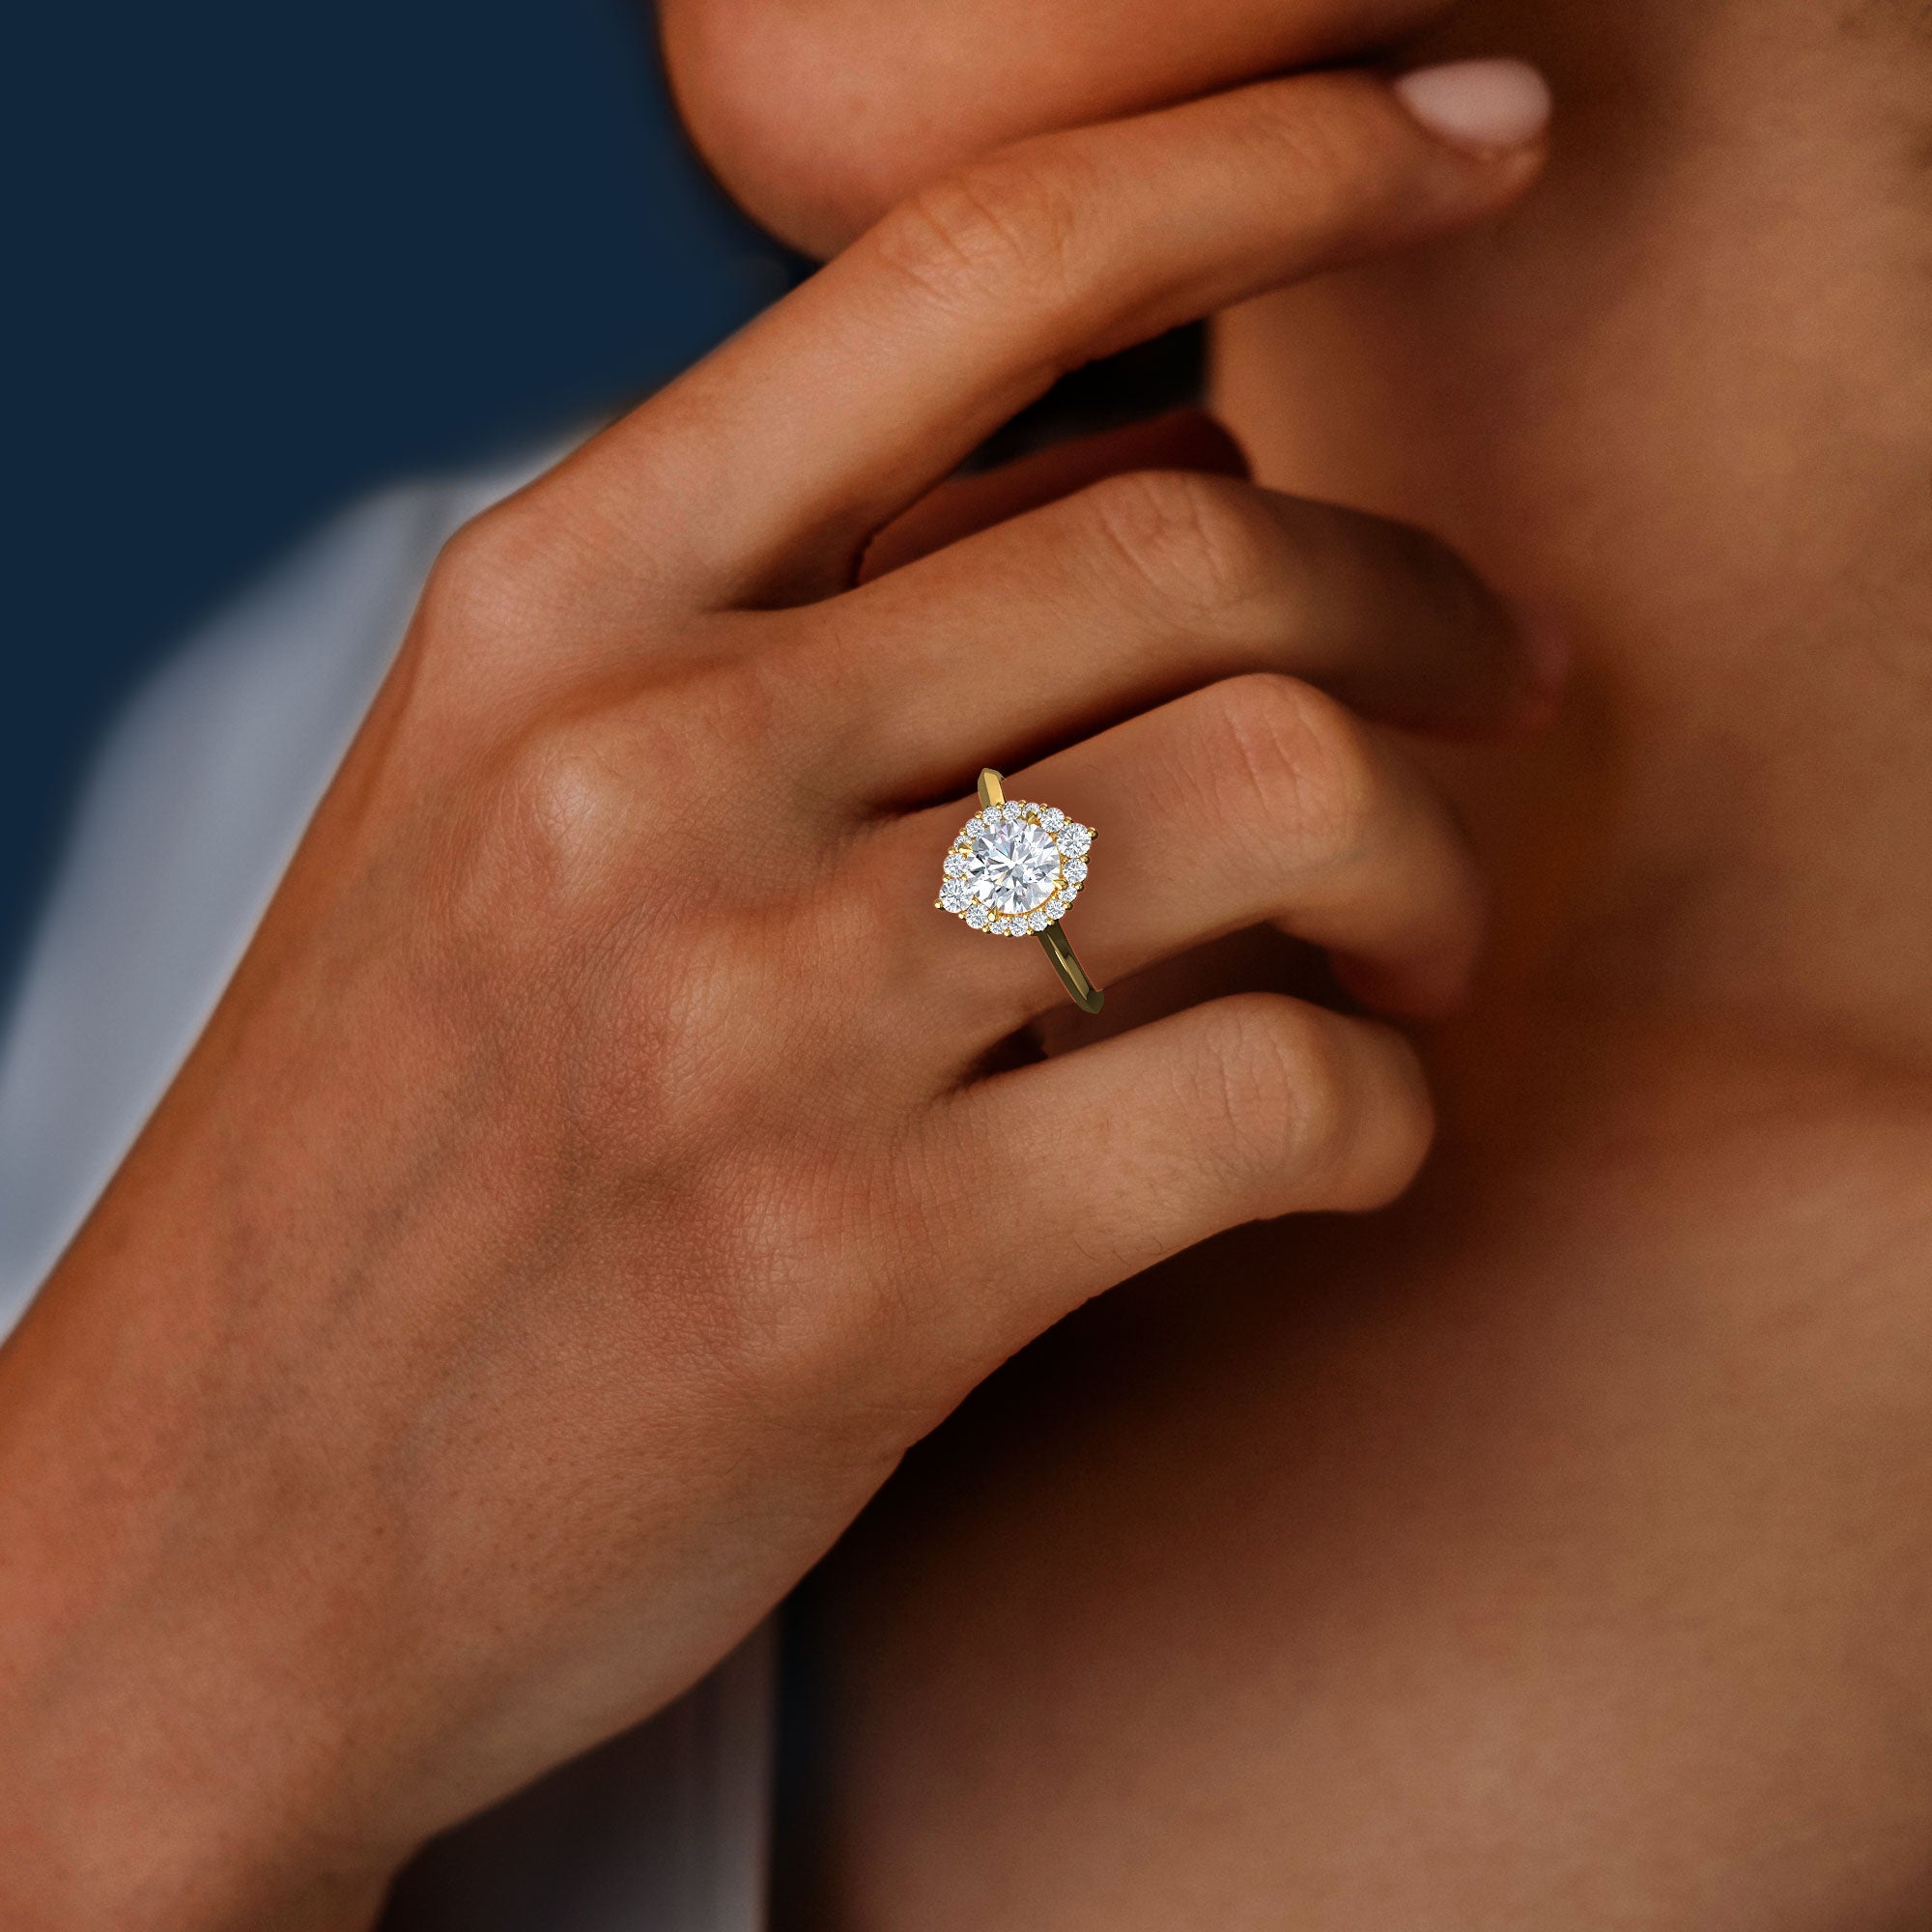 1 carat Natural Round Diamond - Hatton Garden Engagement Ring